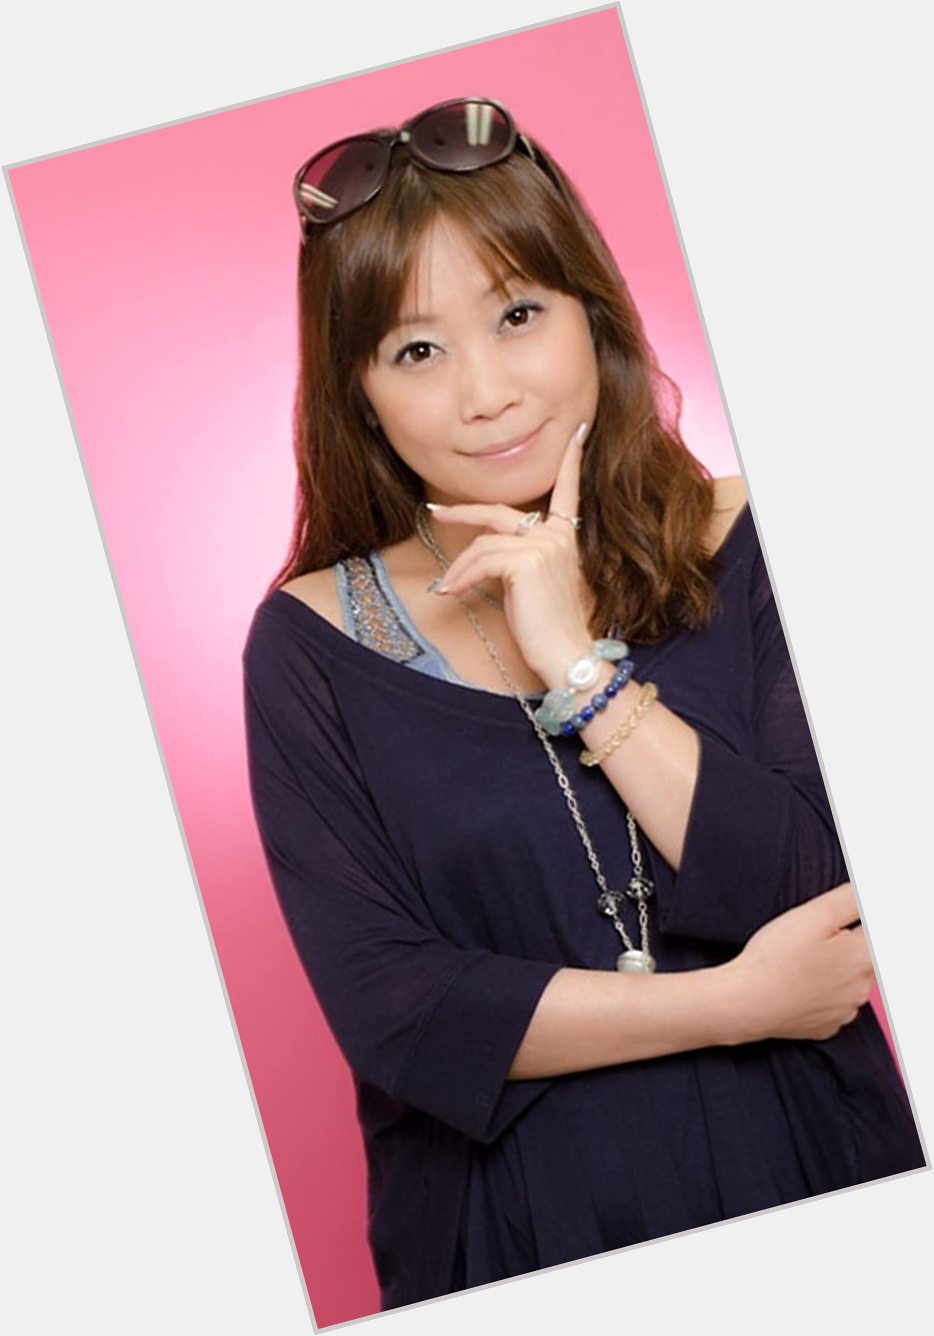 Junko Takeuchi dating 2